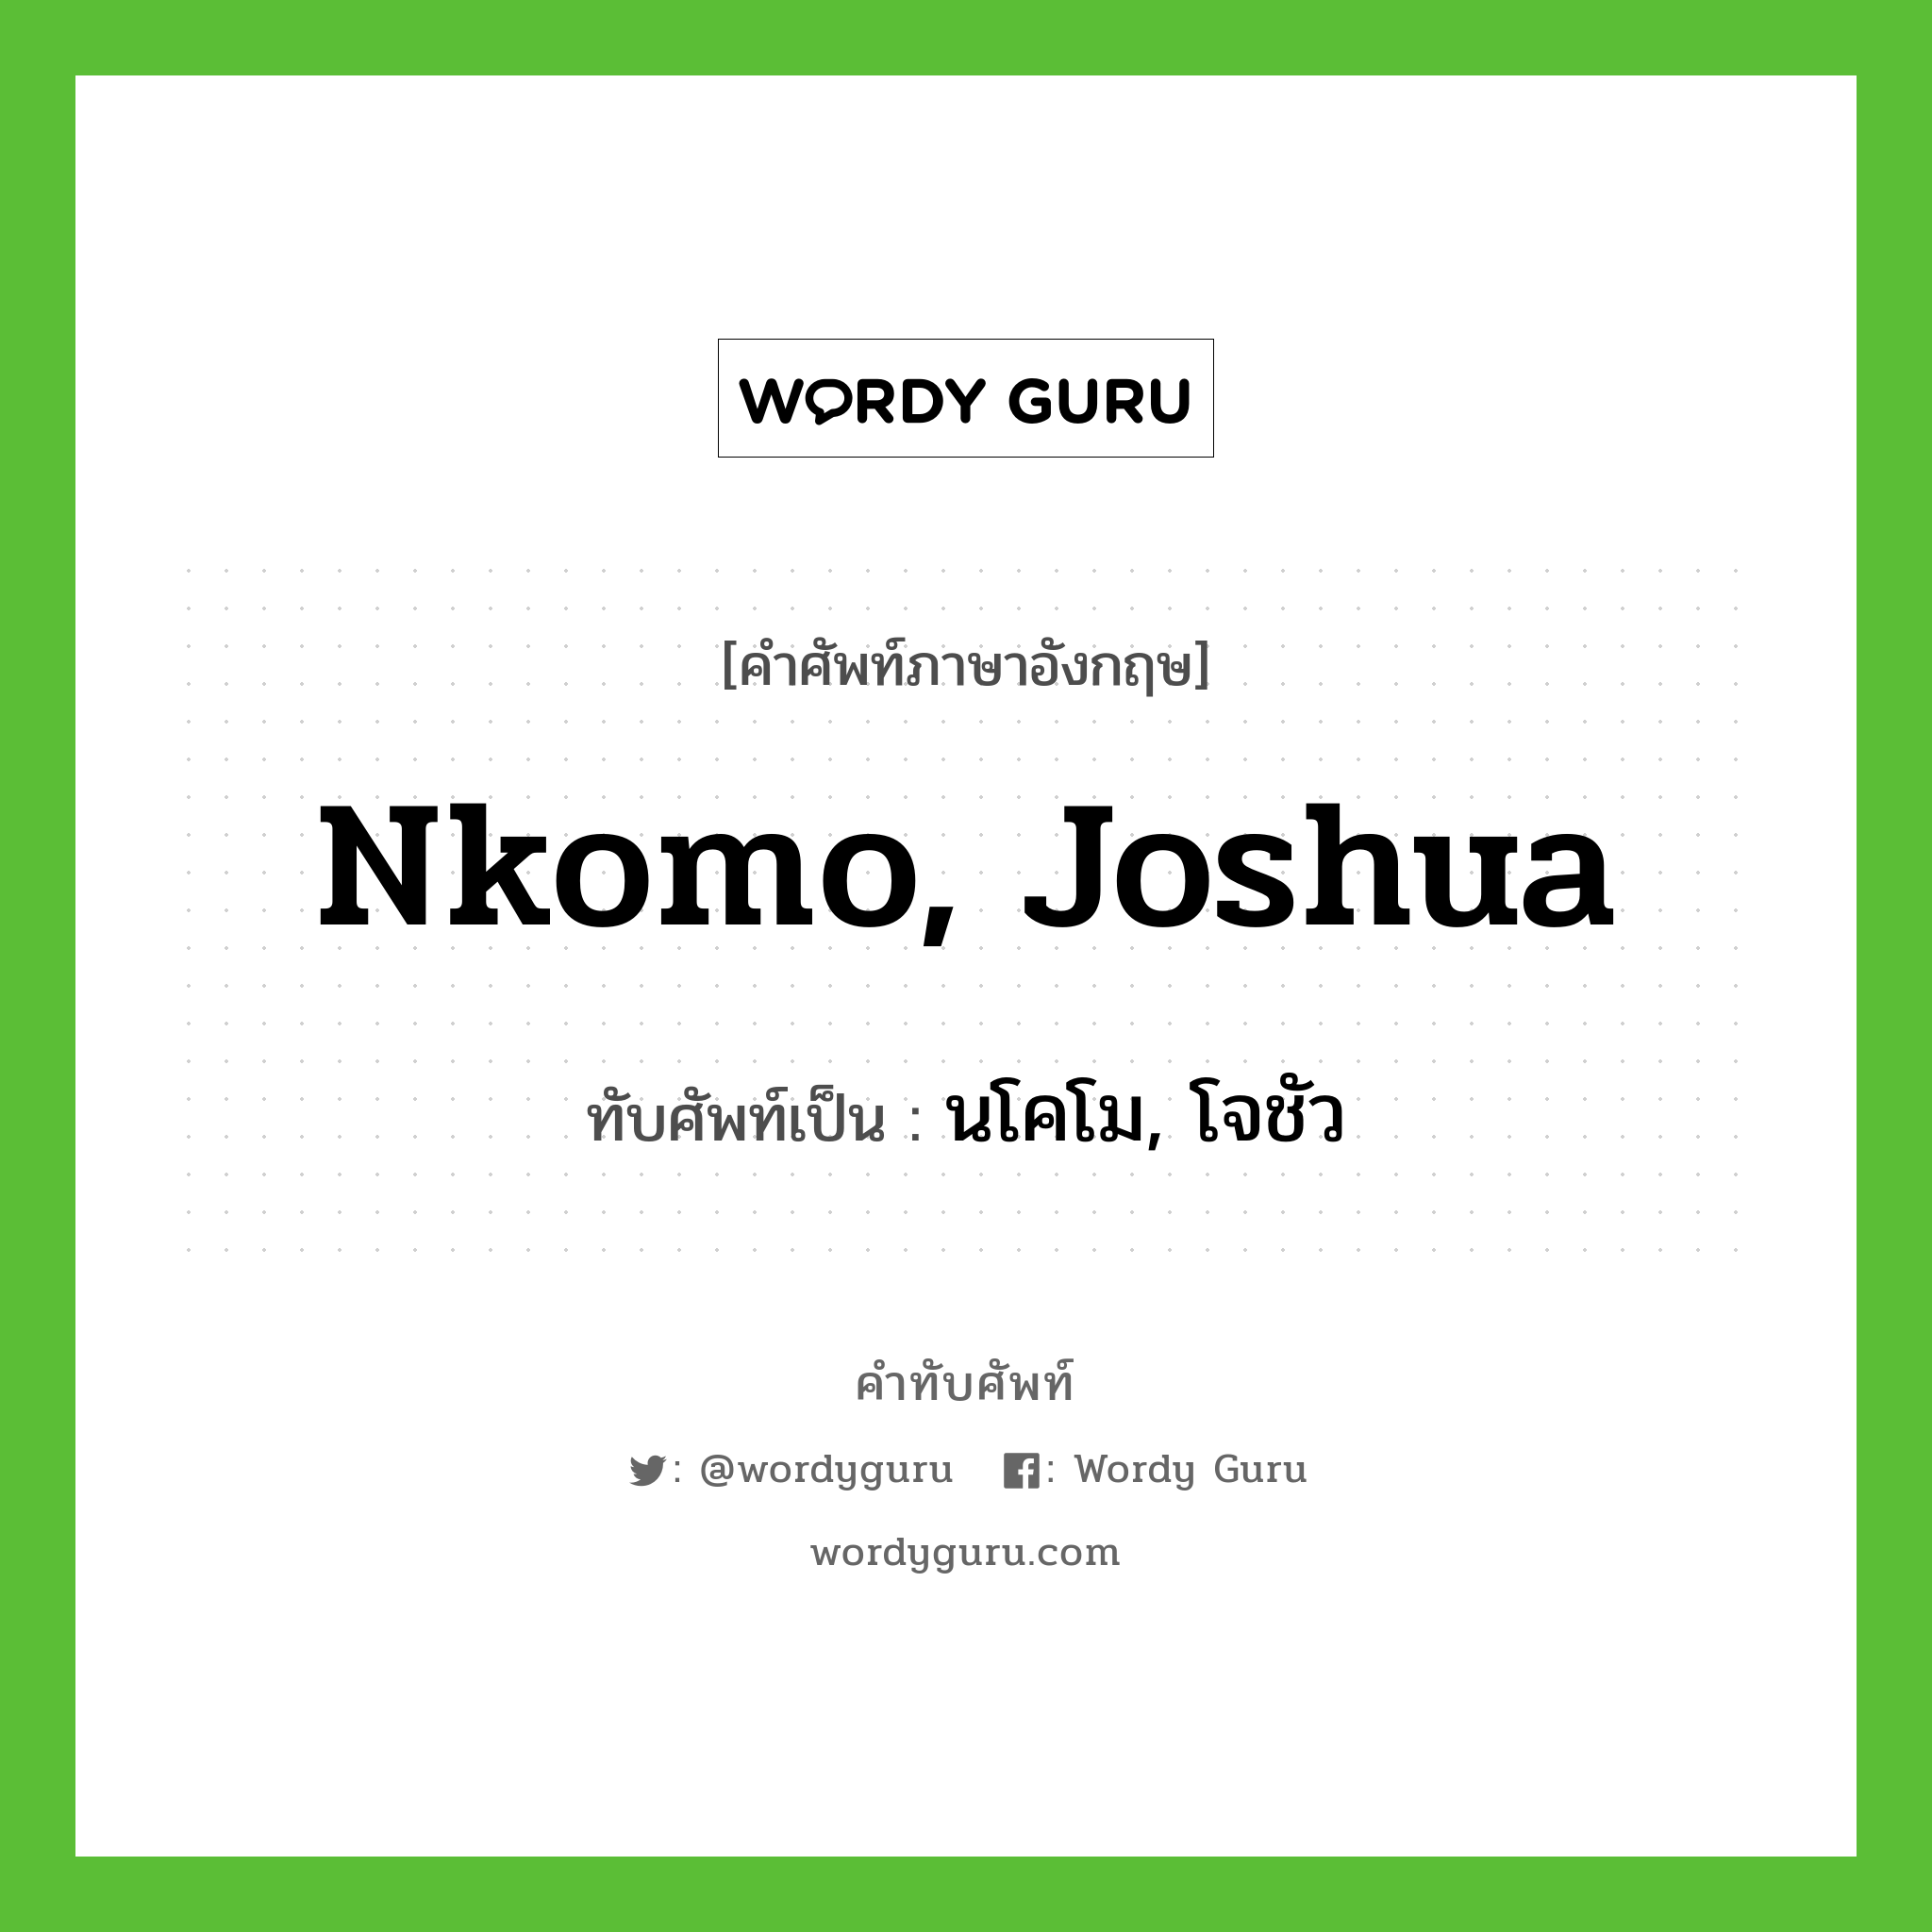 นโคโม, โจชัว เขียนอย่างไร?, คำศัพท์ภาษาอังกฤษ นโคโม, โจชัว ทับศัพท์เป็น Nkomo, Joshua